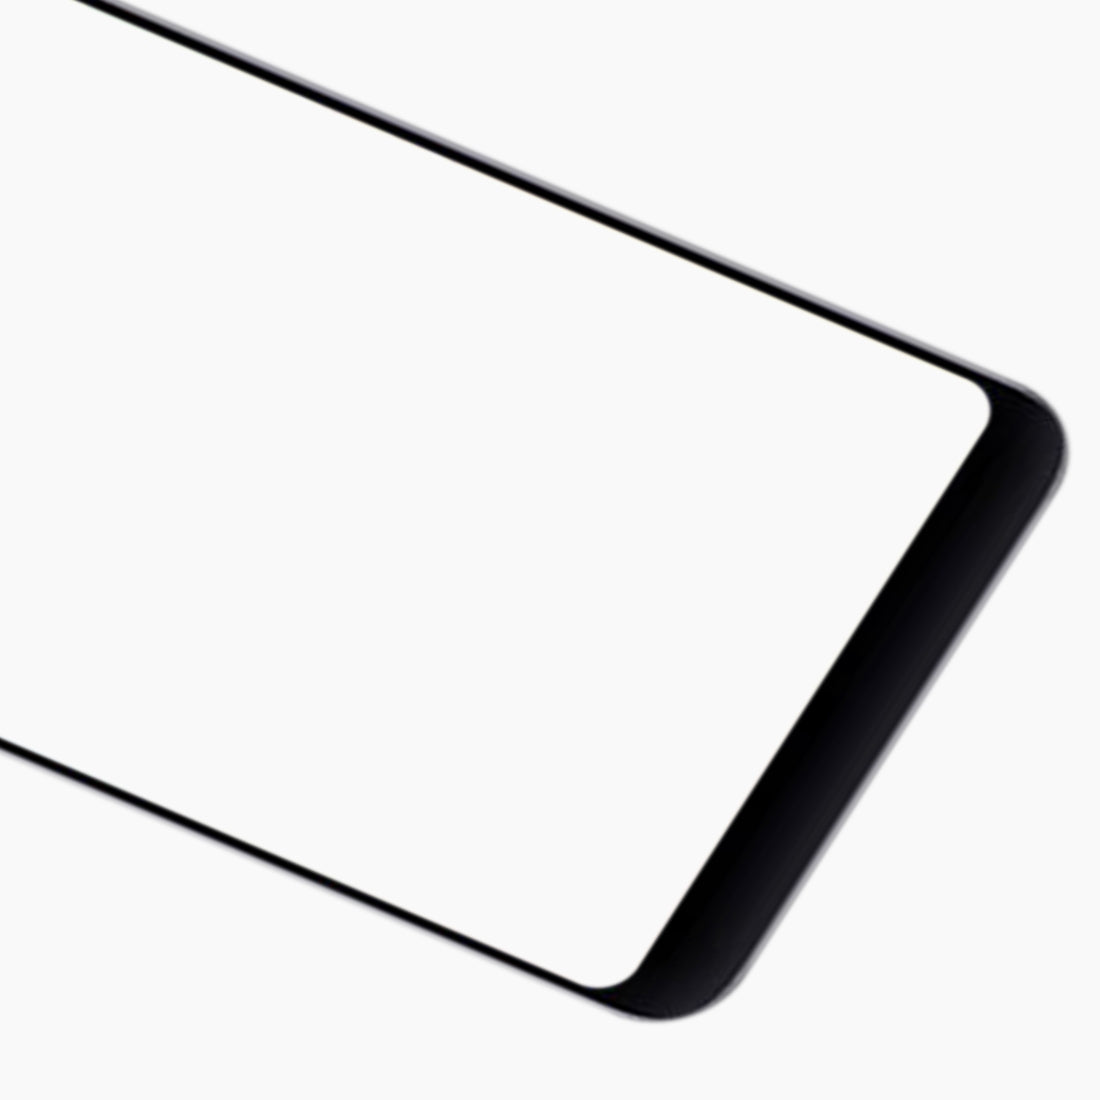 Vitre Ecran Avant + Adhésif OCA Xiaomi Redmi 5 Plus Noir